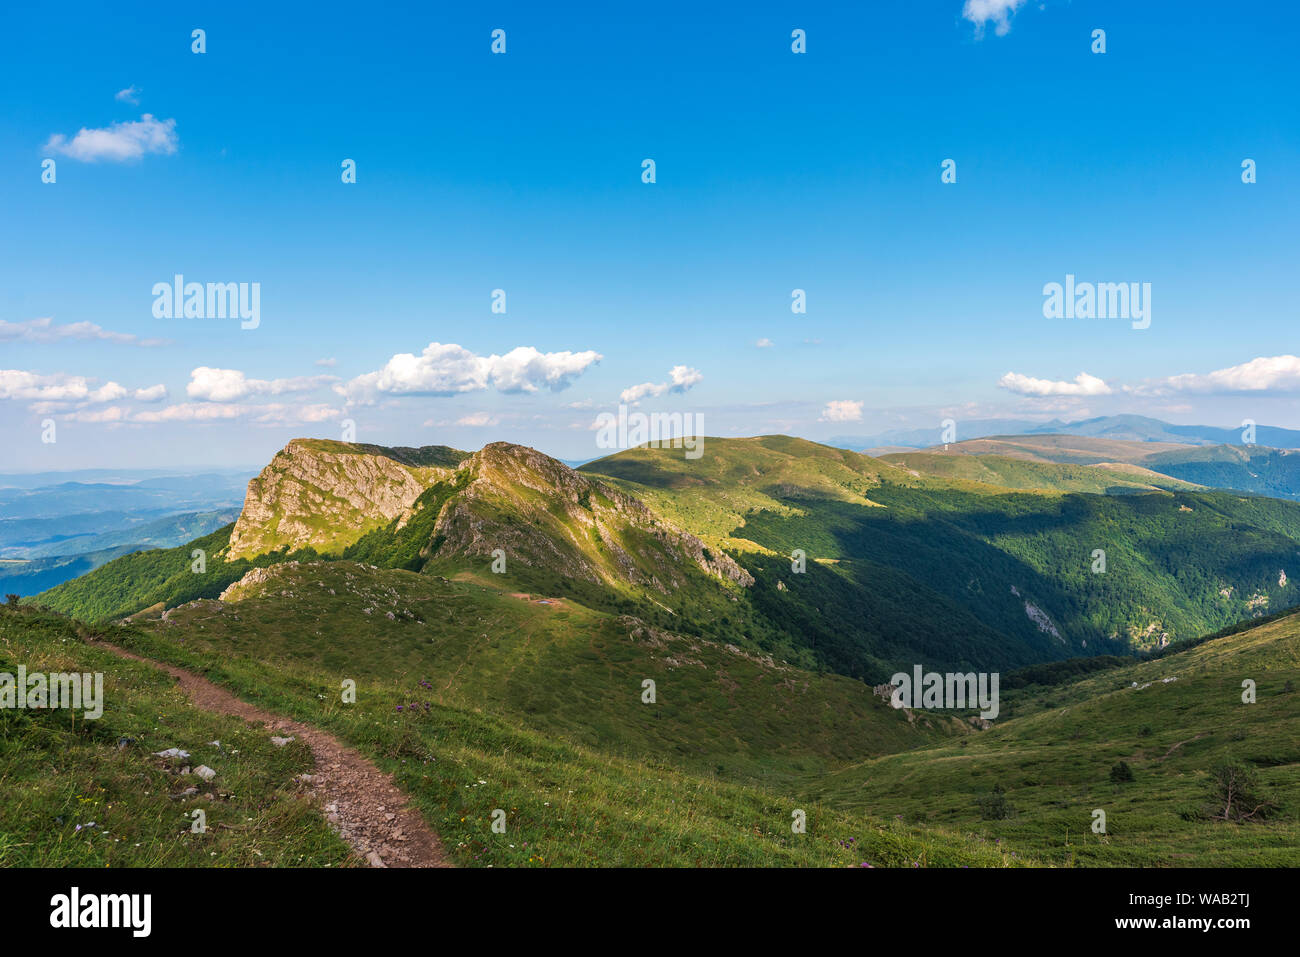 Vue panoramique à partir de l'été ( vieille montagne Stara planina), la Bulgarie. Parc national Balkan Central, Stena Kozia chèvre (mur) réserver. Banque D'Images